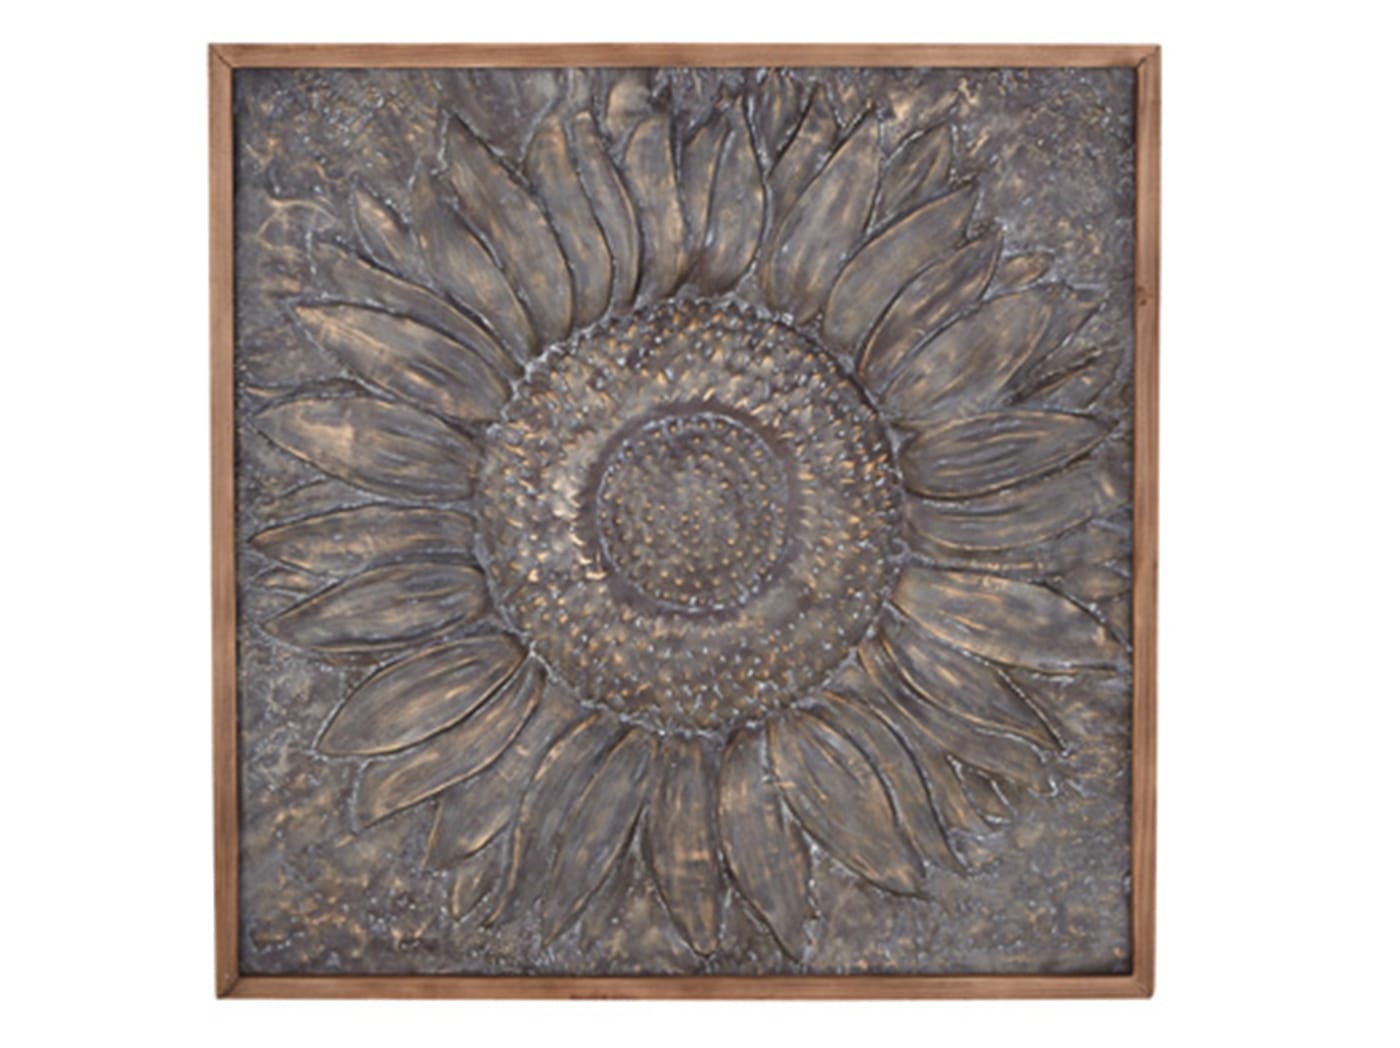 Metal Sunflower Art 39"W x 39"H